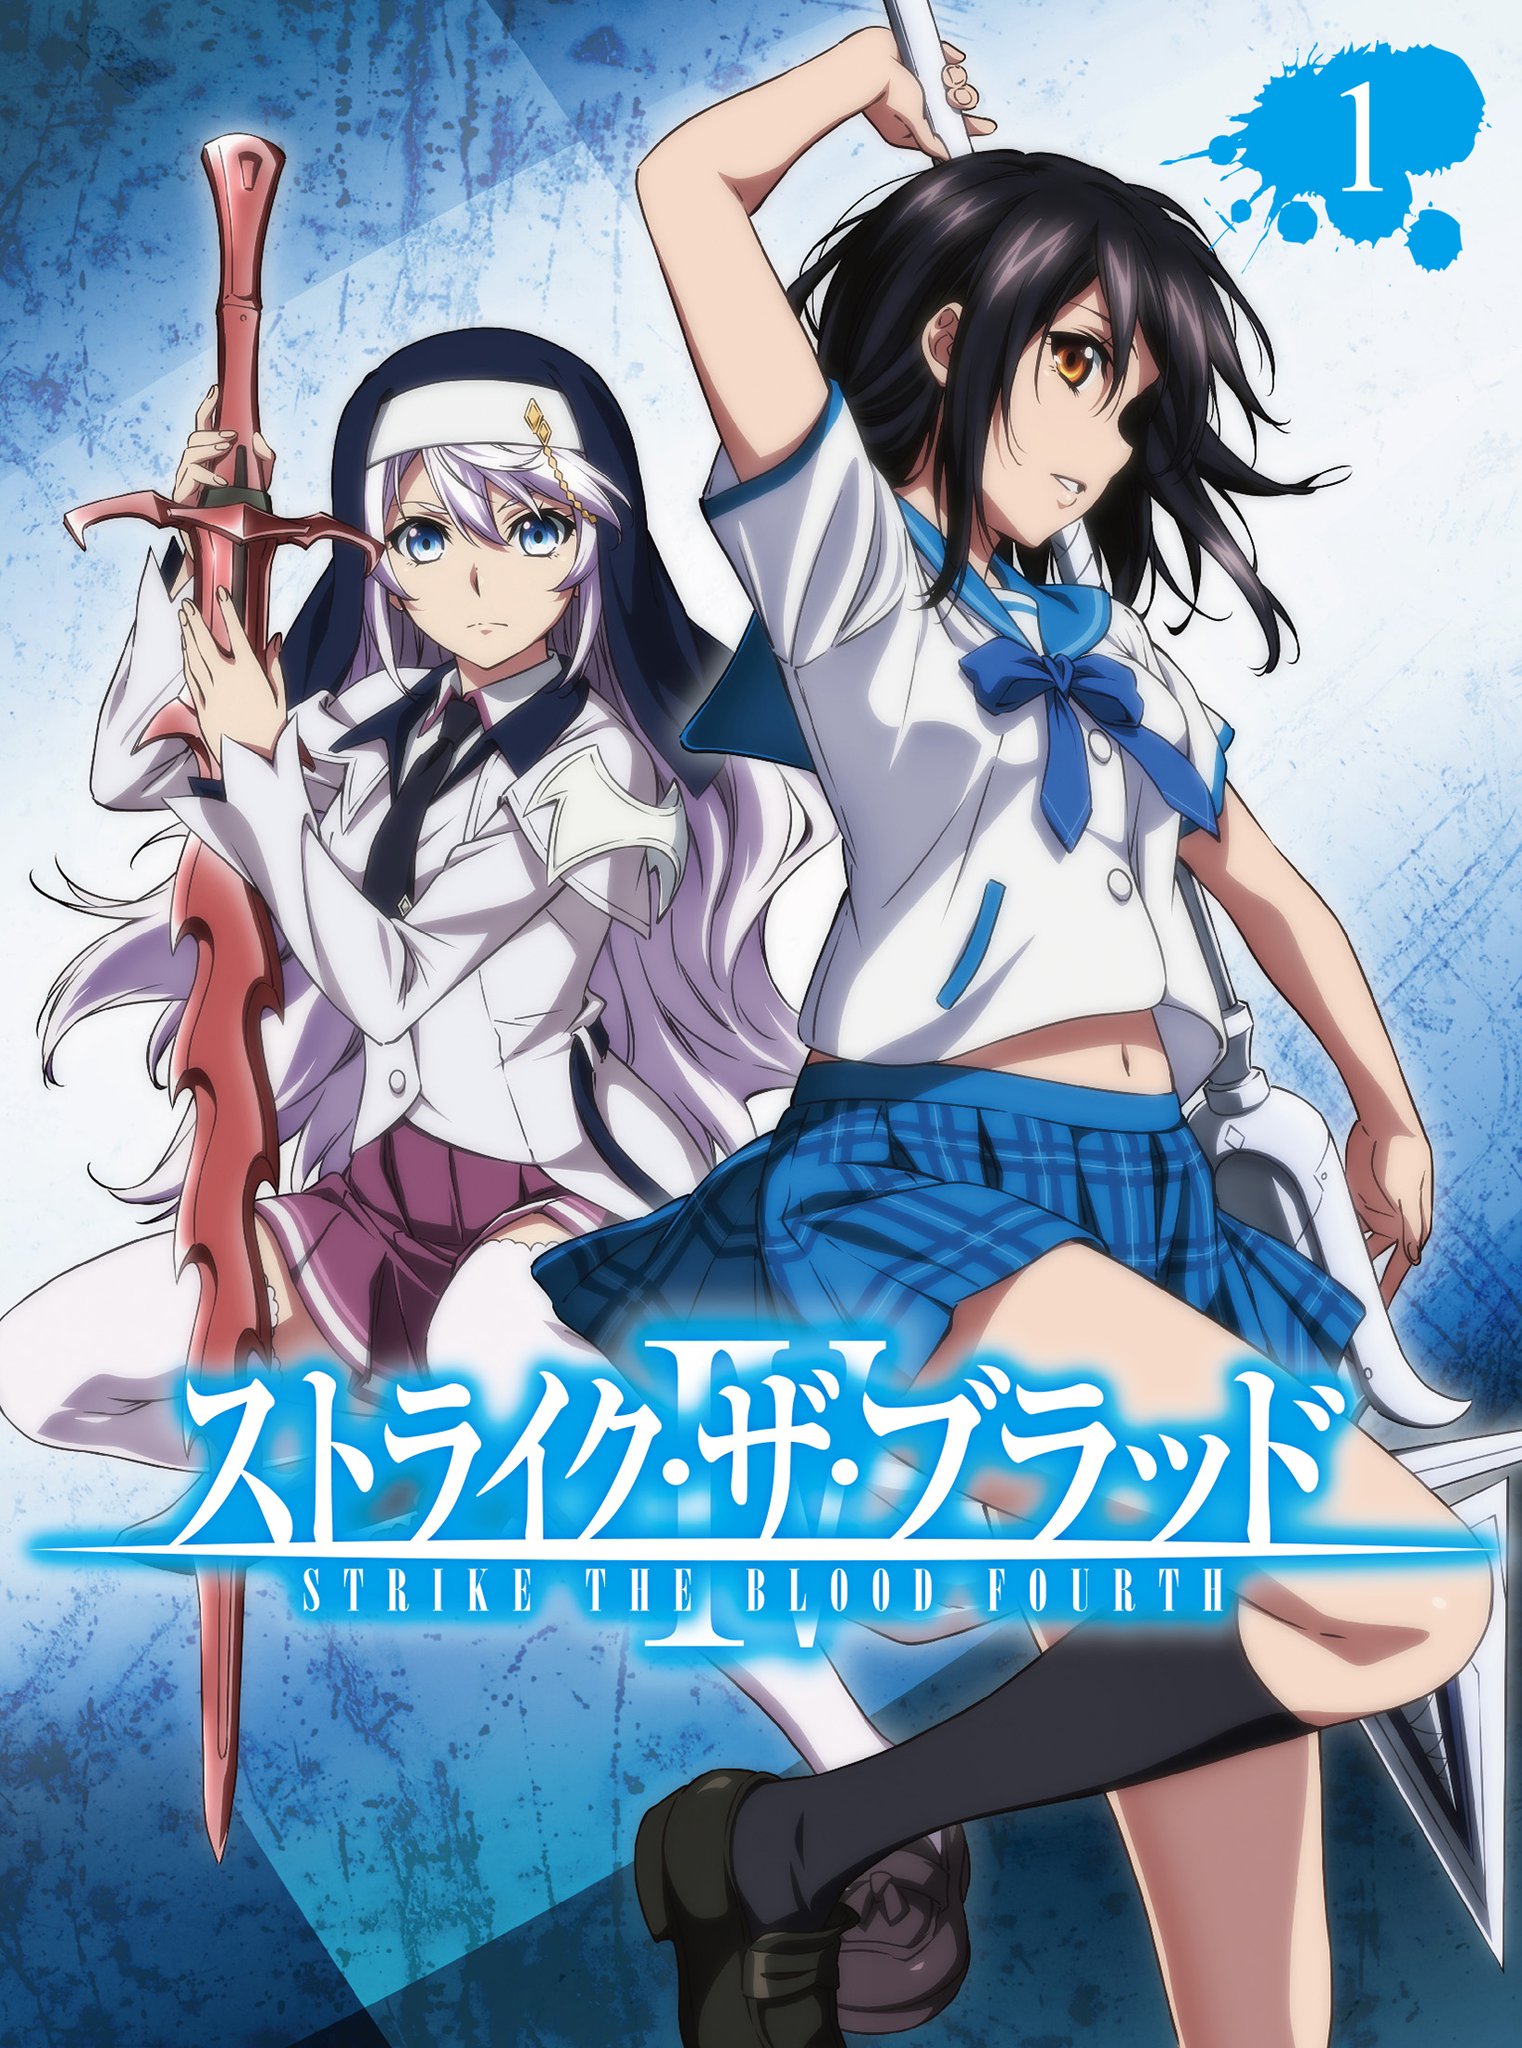 Strike the Blood (Manga): Strike the Blood, Vol. 8 (Manga